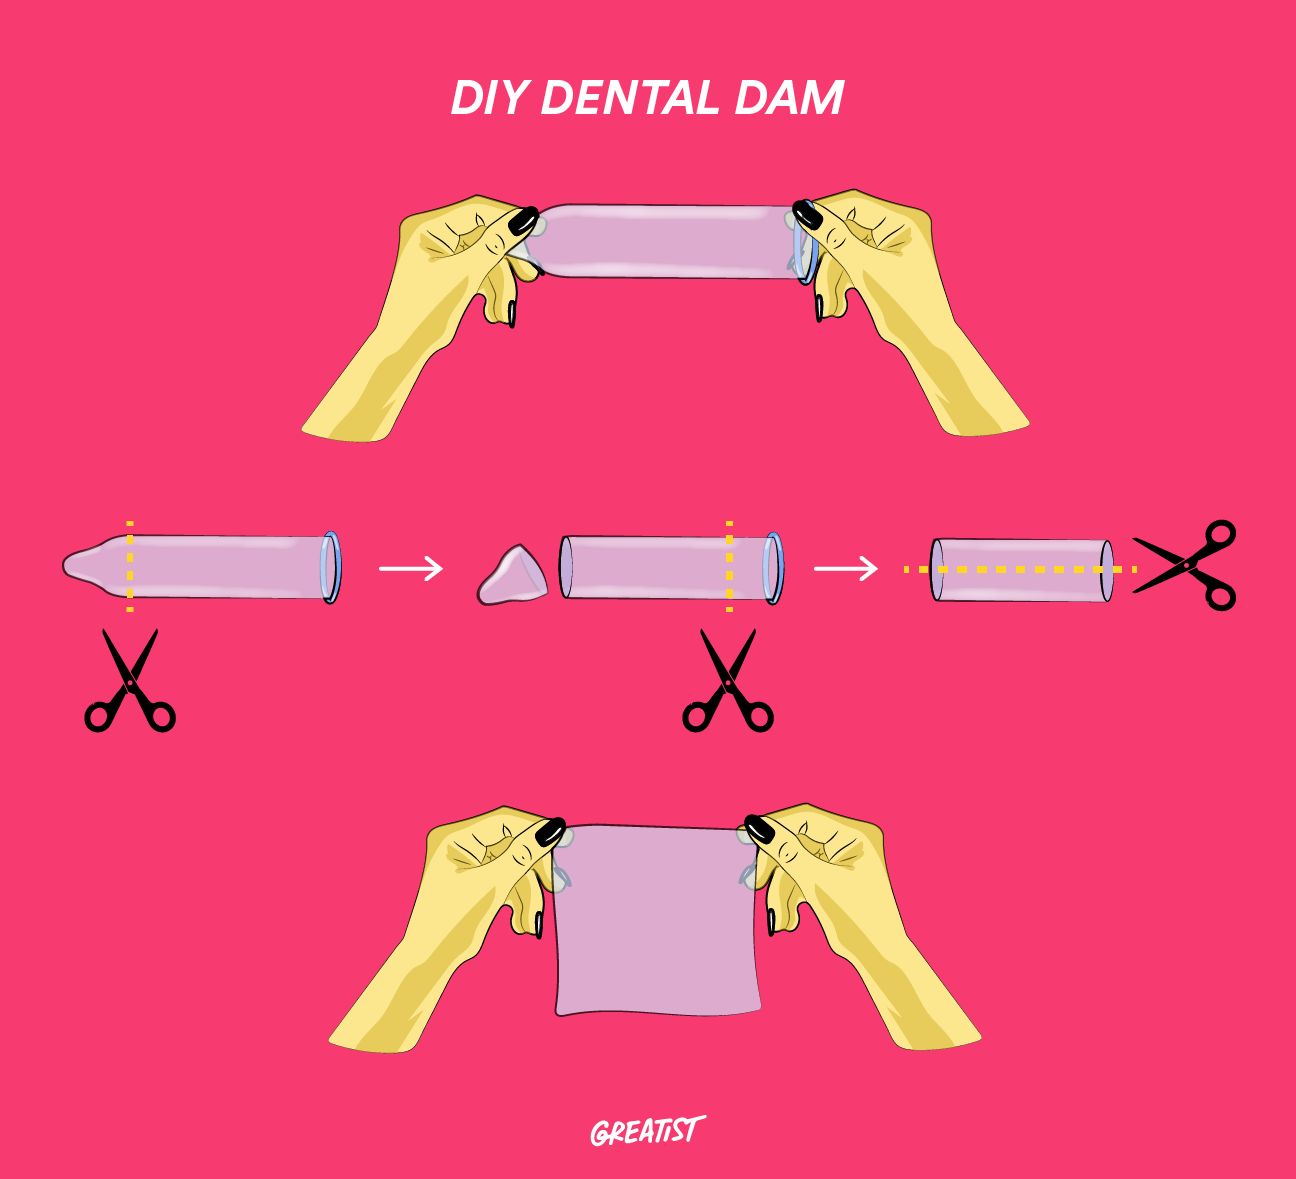 dental dam contraceptive in use